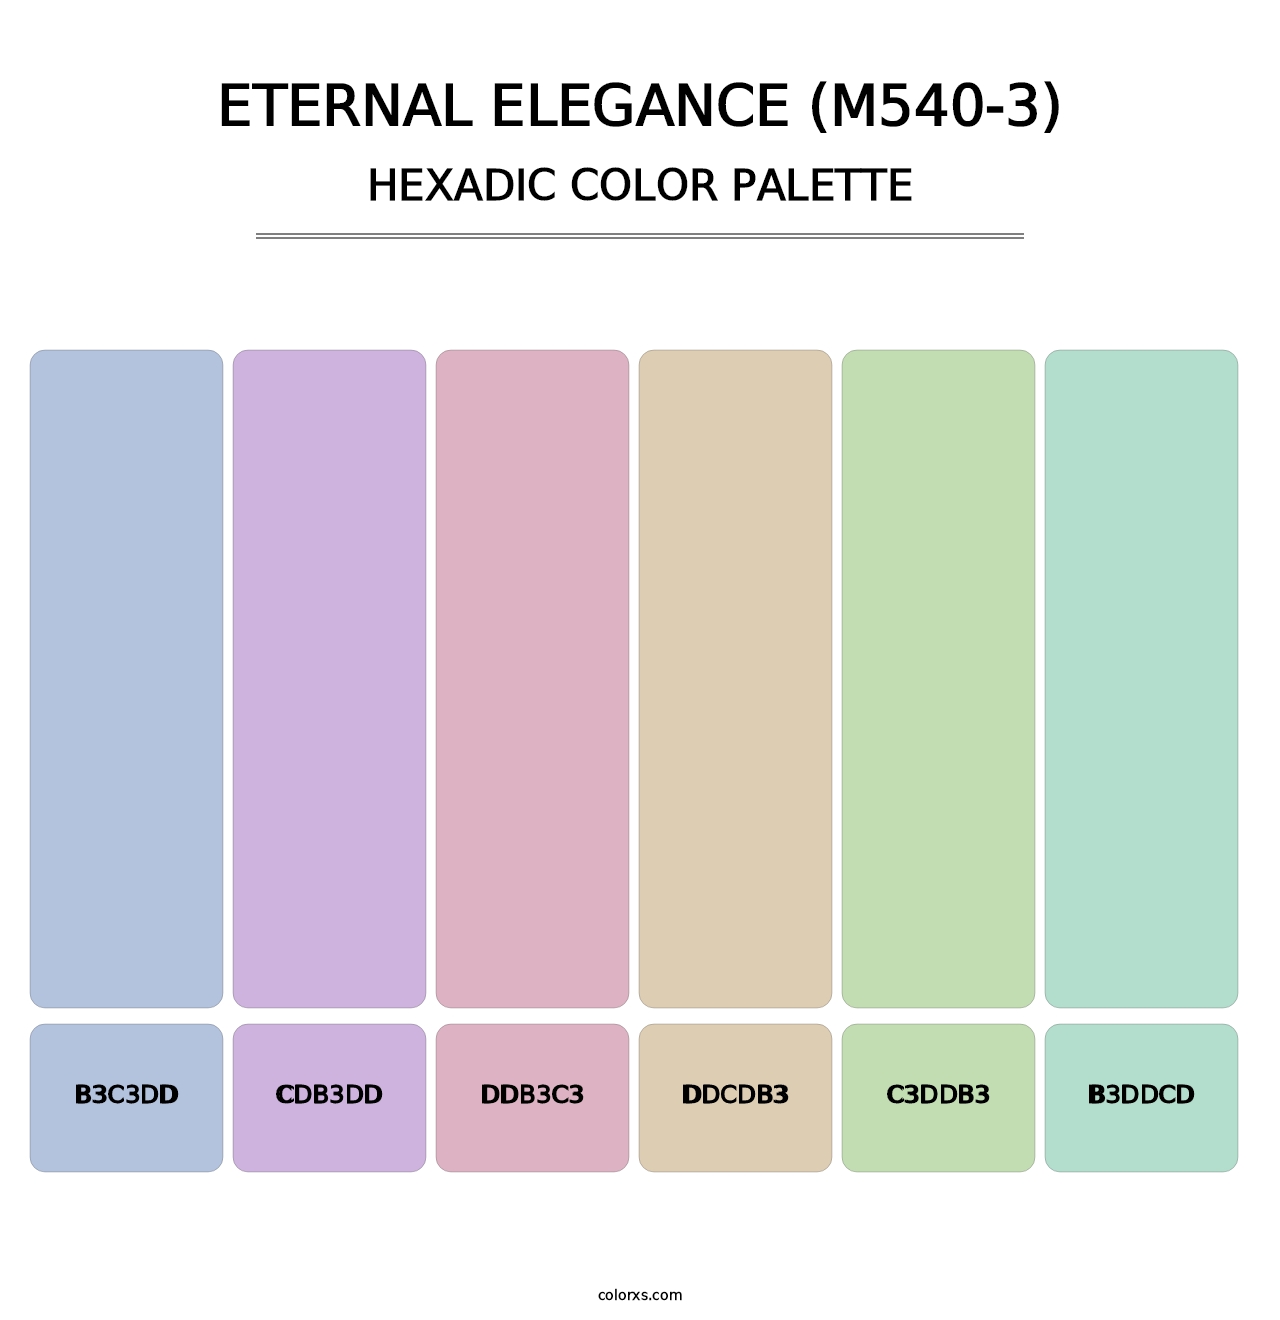 Eternal Elegance (M540-3) - Hexadic Color Palette